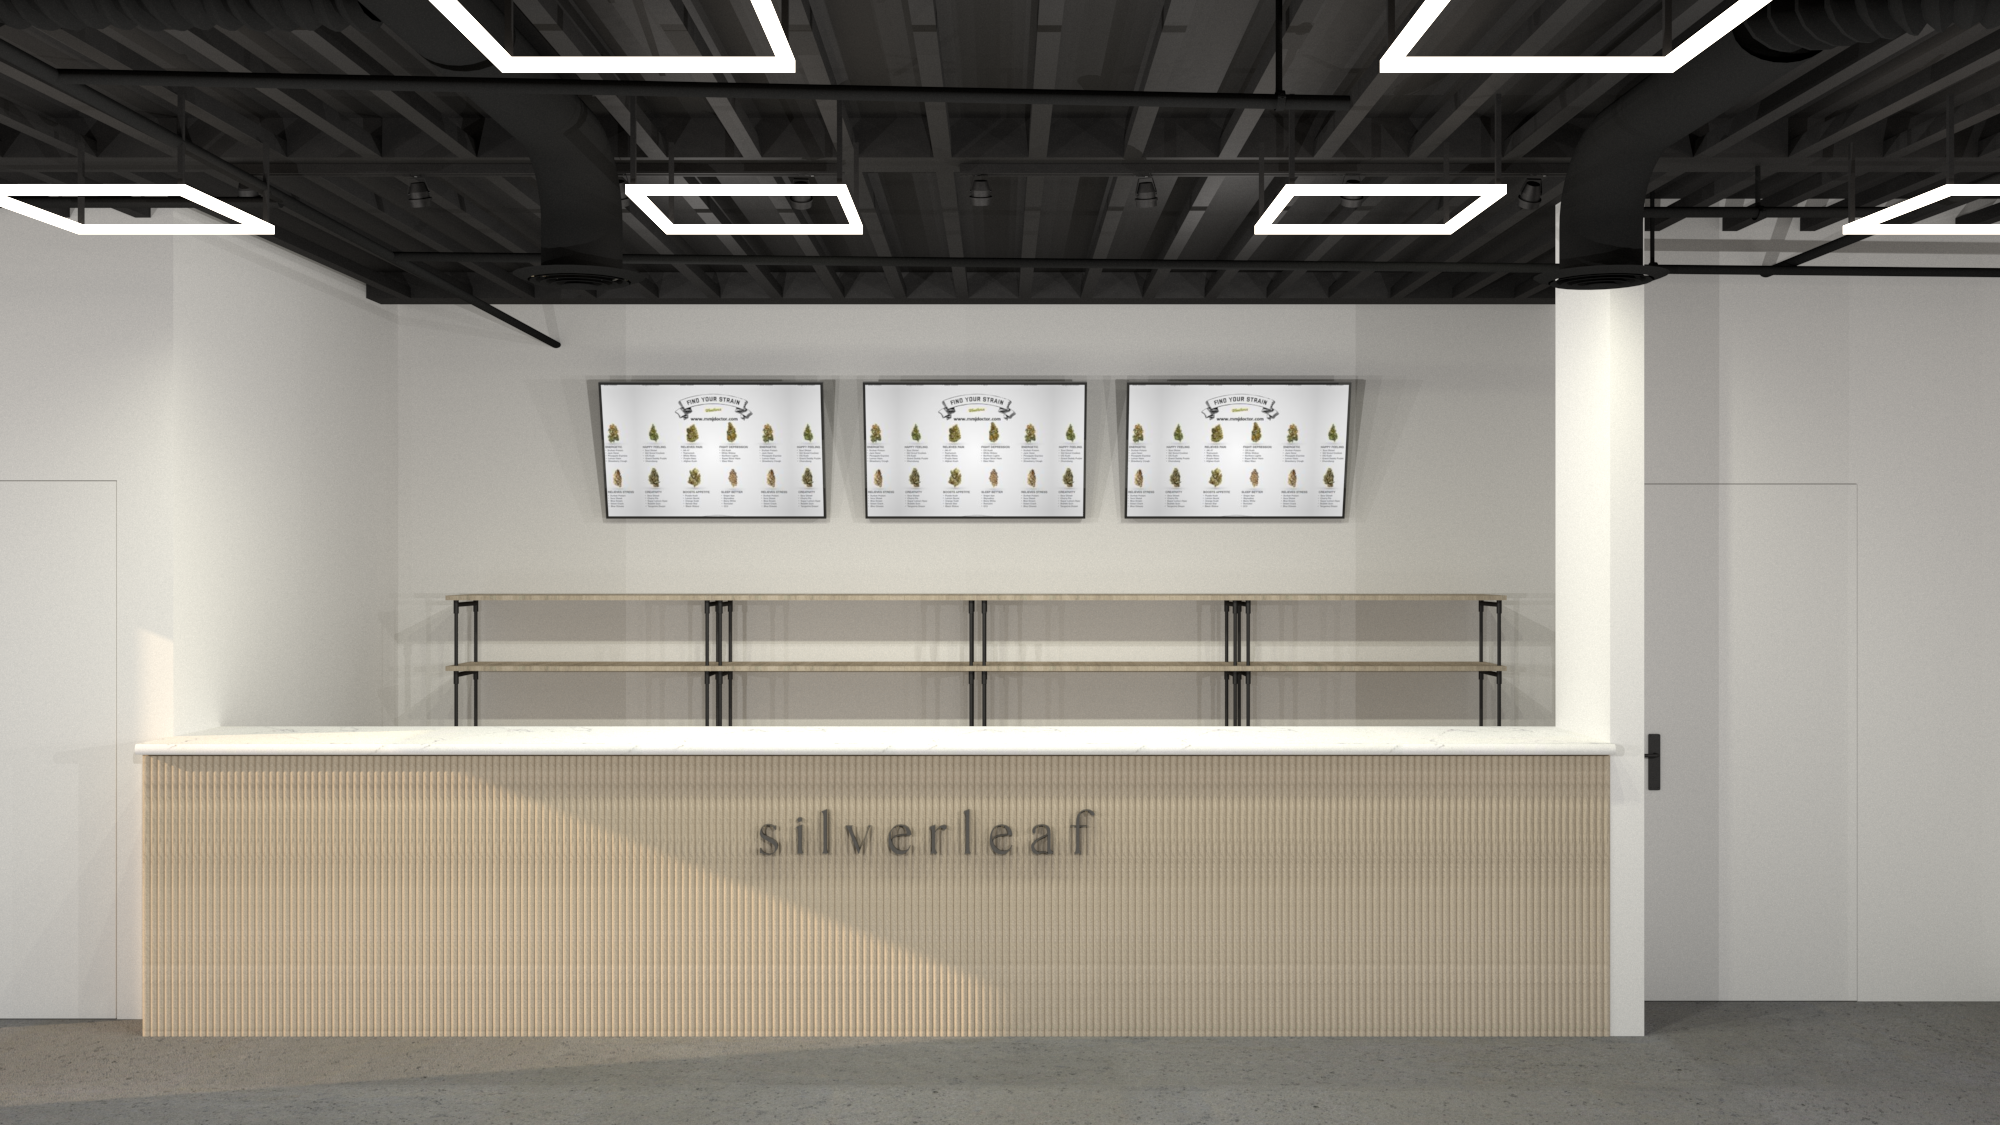 SilverLeaf dispensary